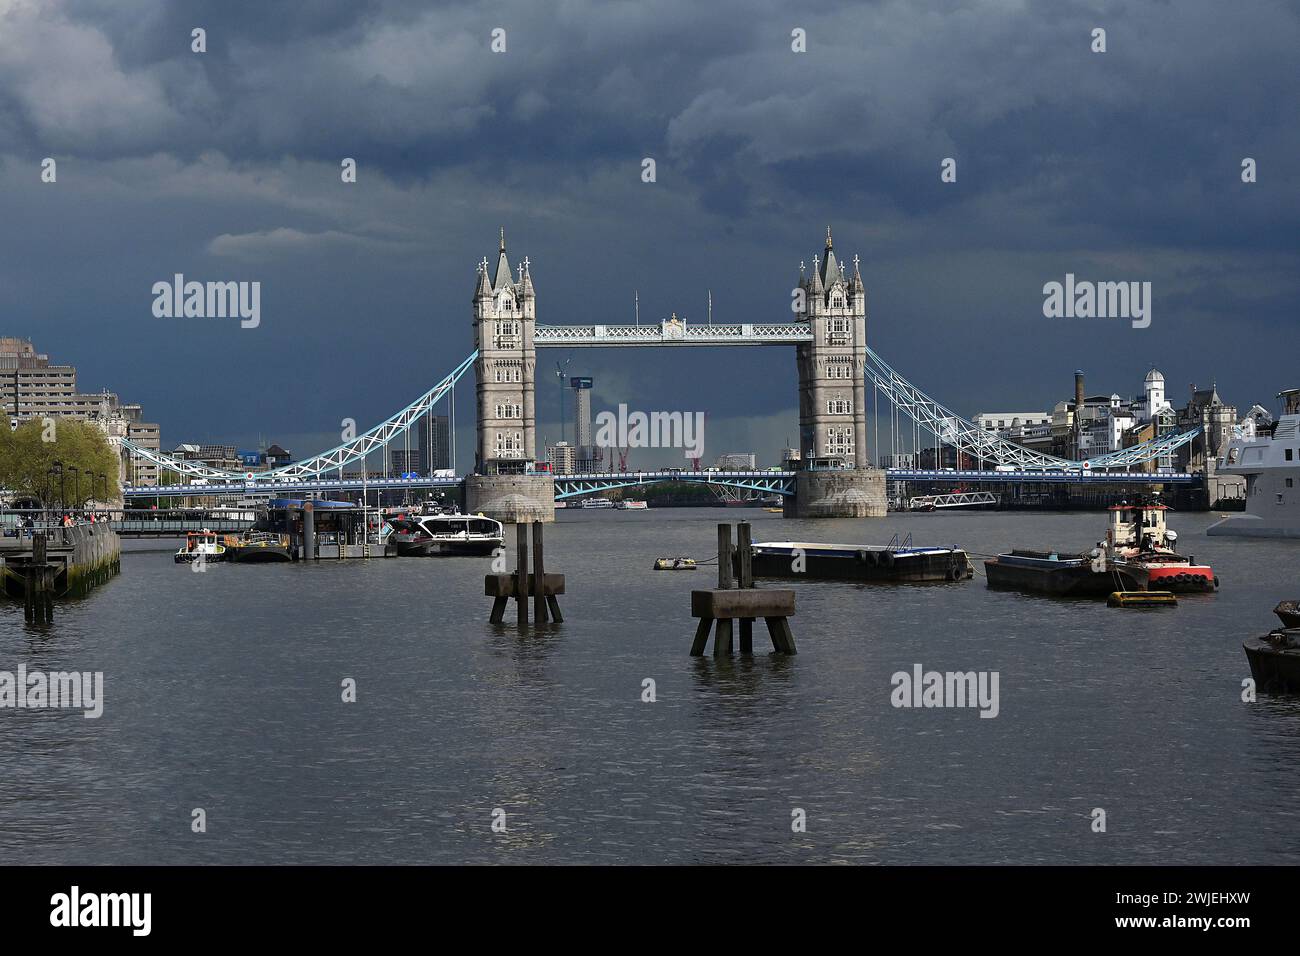 Regno Unito, Londra: Tower Bridge, situato tra Southwark e Tower Hamlets, che si estende attraverso il Tamigi. Qui, sotto un cielo tempestoso Foto Stock